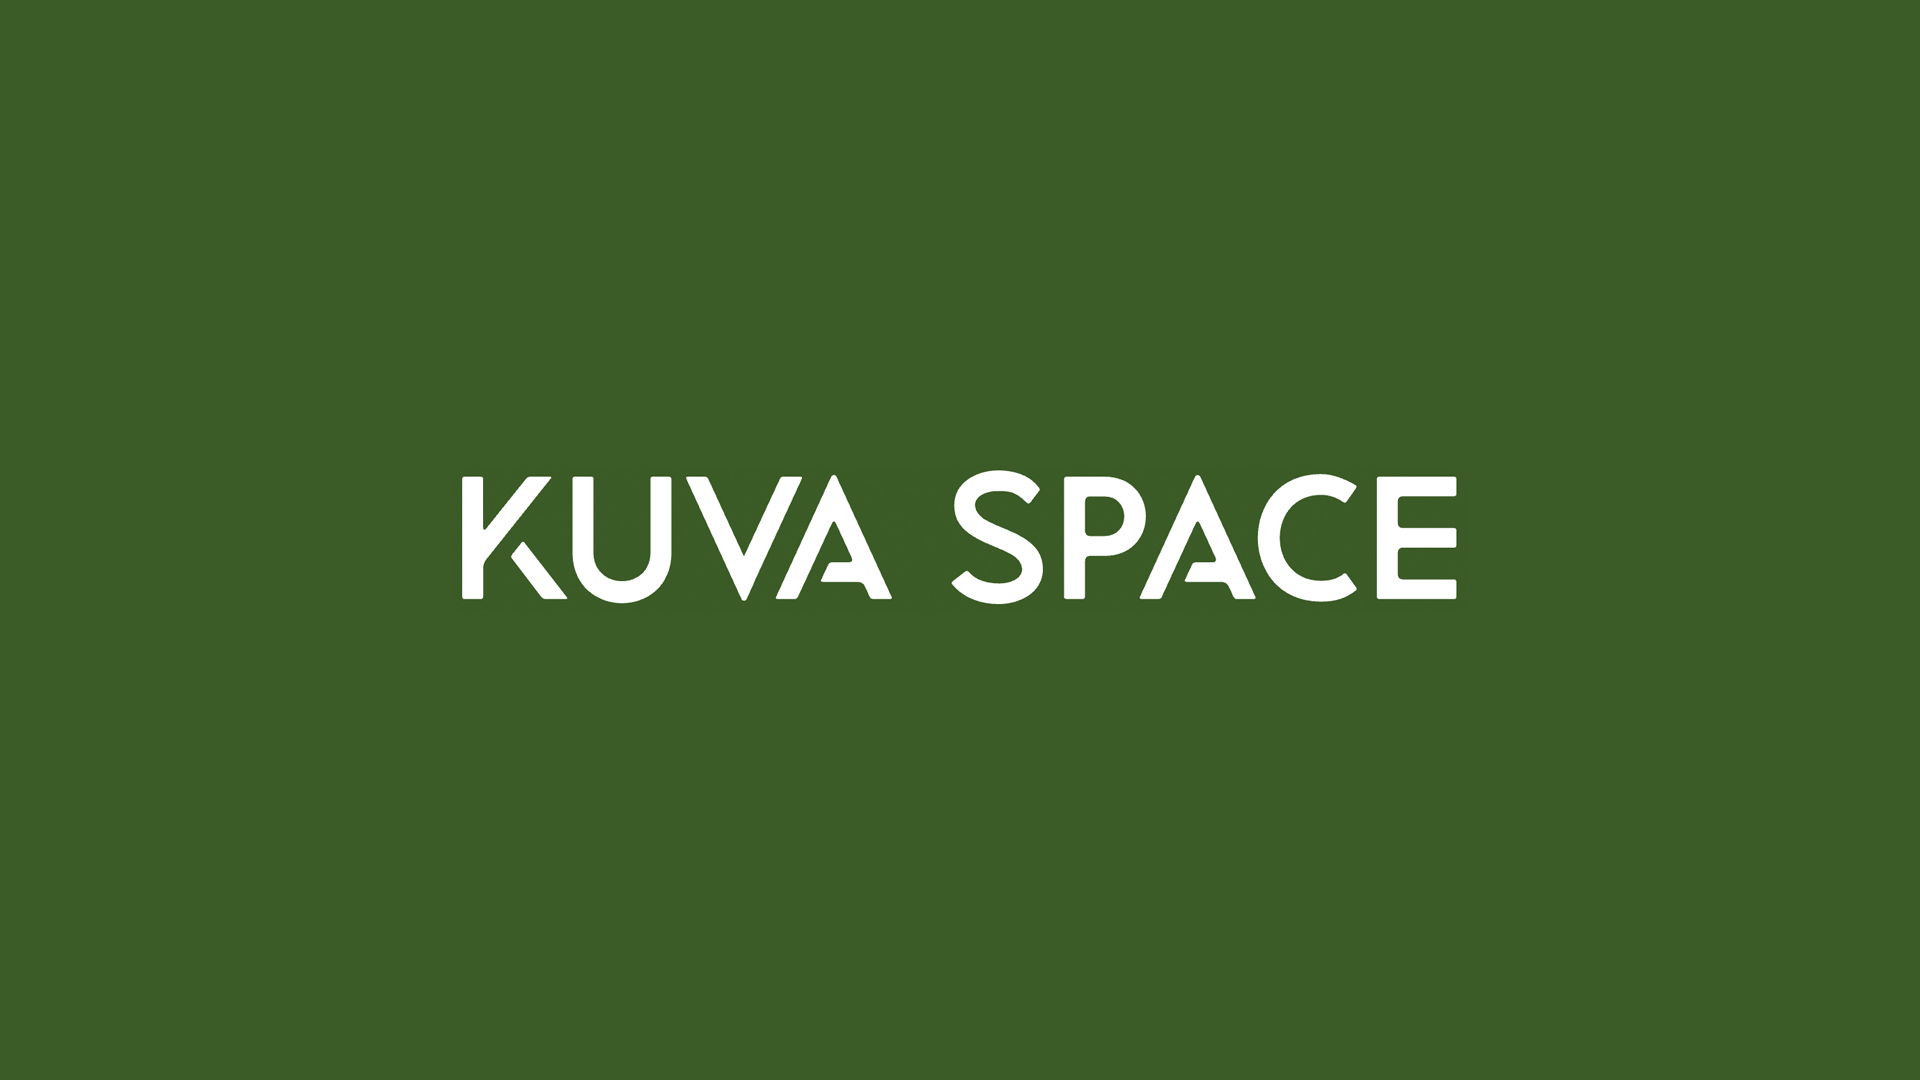 Kuva Spaceが1,660万ユーロのシリーズAラウンドを調達し、高分光画像の展開を拡大